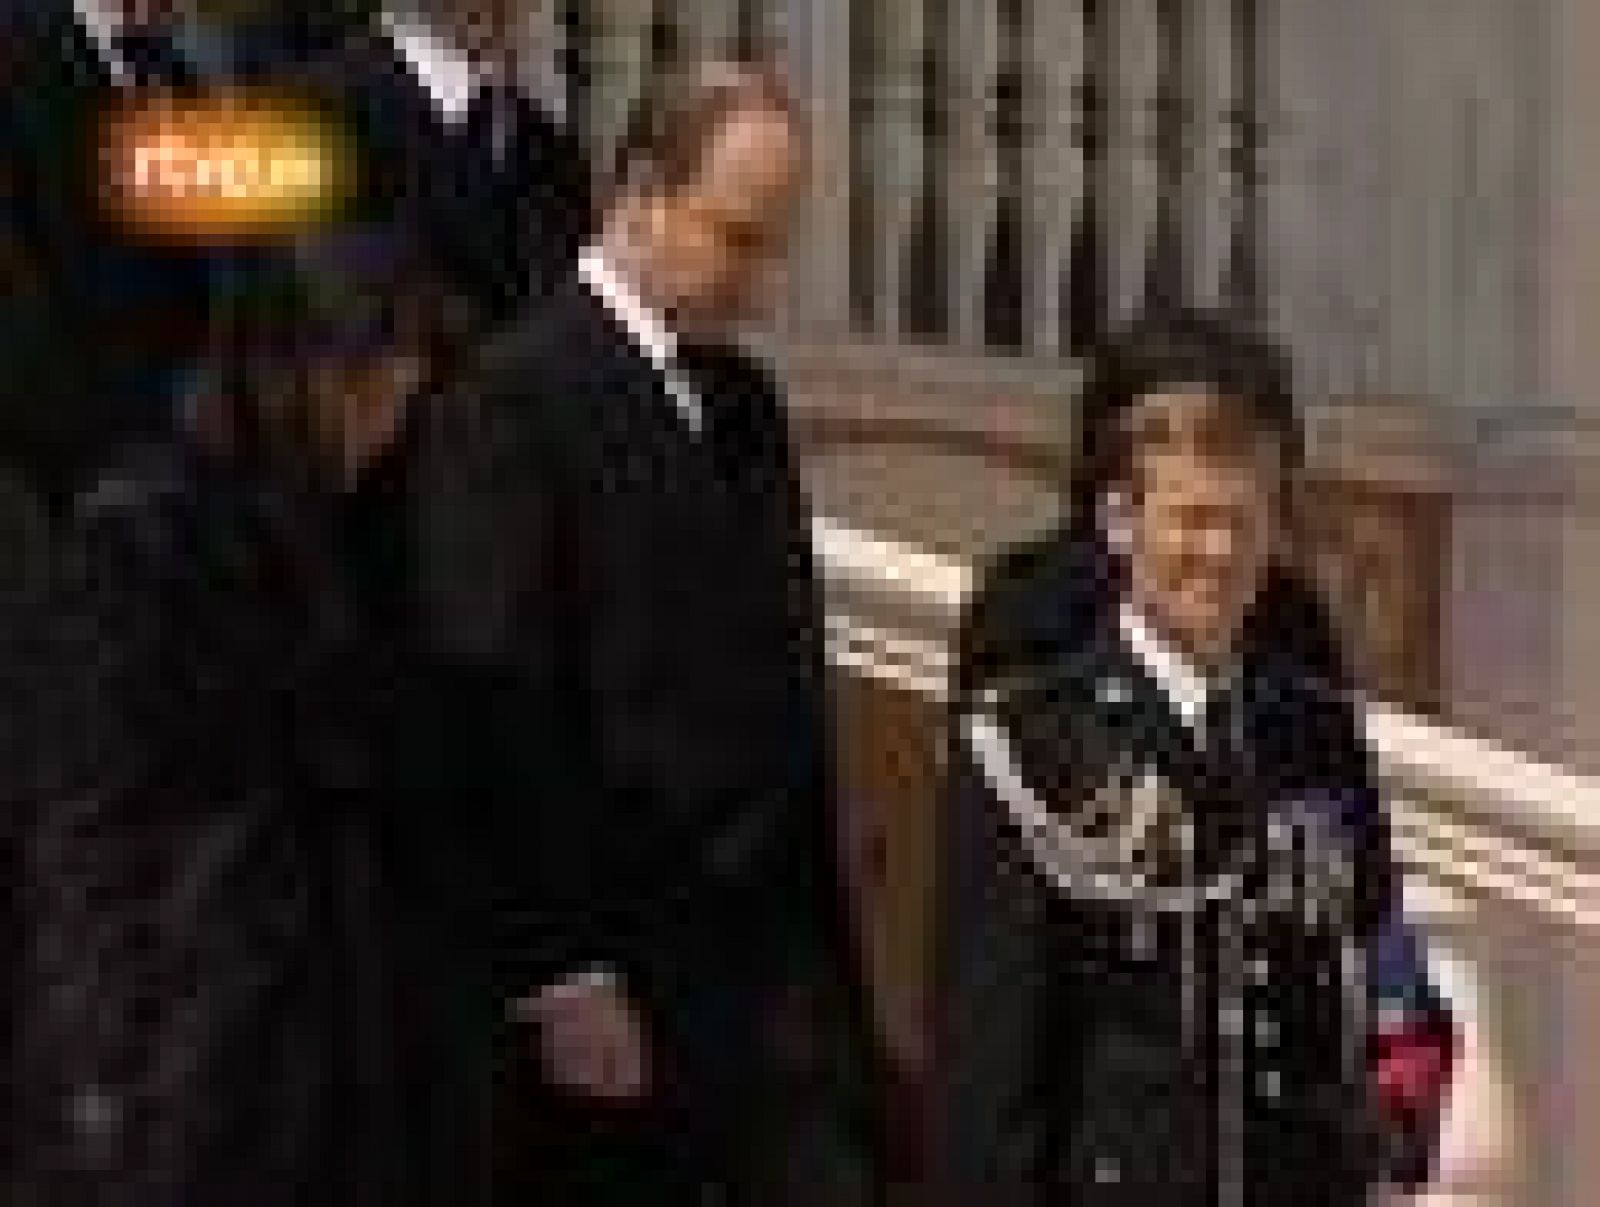  El príncipe Rainiero III de Mónaco falleció a los 81 años el 6 de abril de 2005. Acompañado por su hijo y regente, el príncipe Alberto, murió víctima de los problemas broncopulmonar, cardíaco y renal que sufría desde hacia años. 